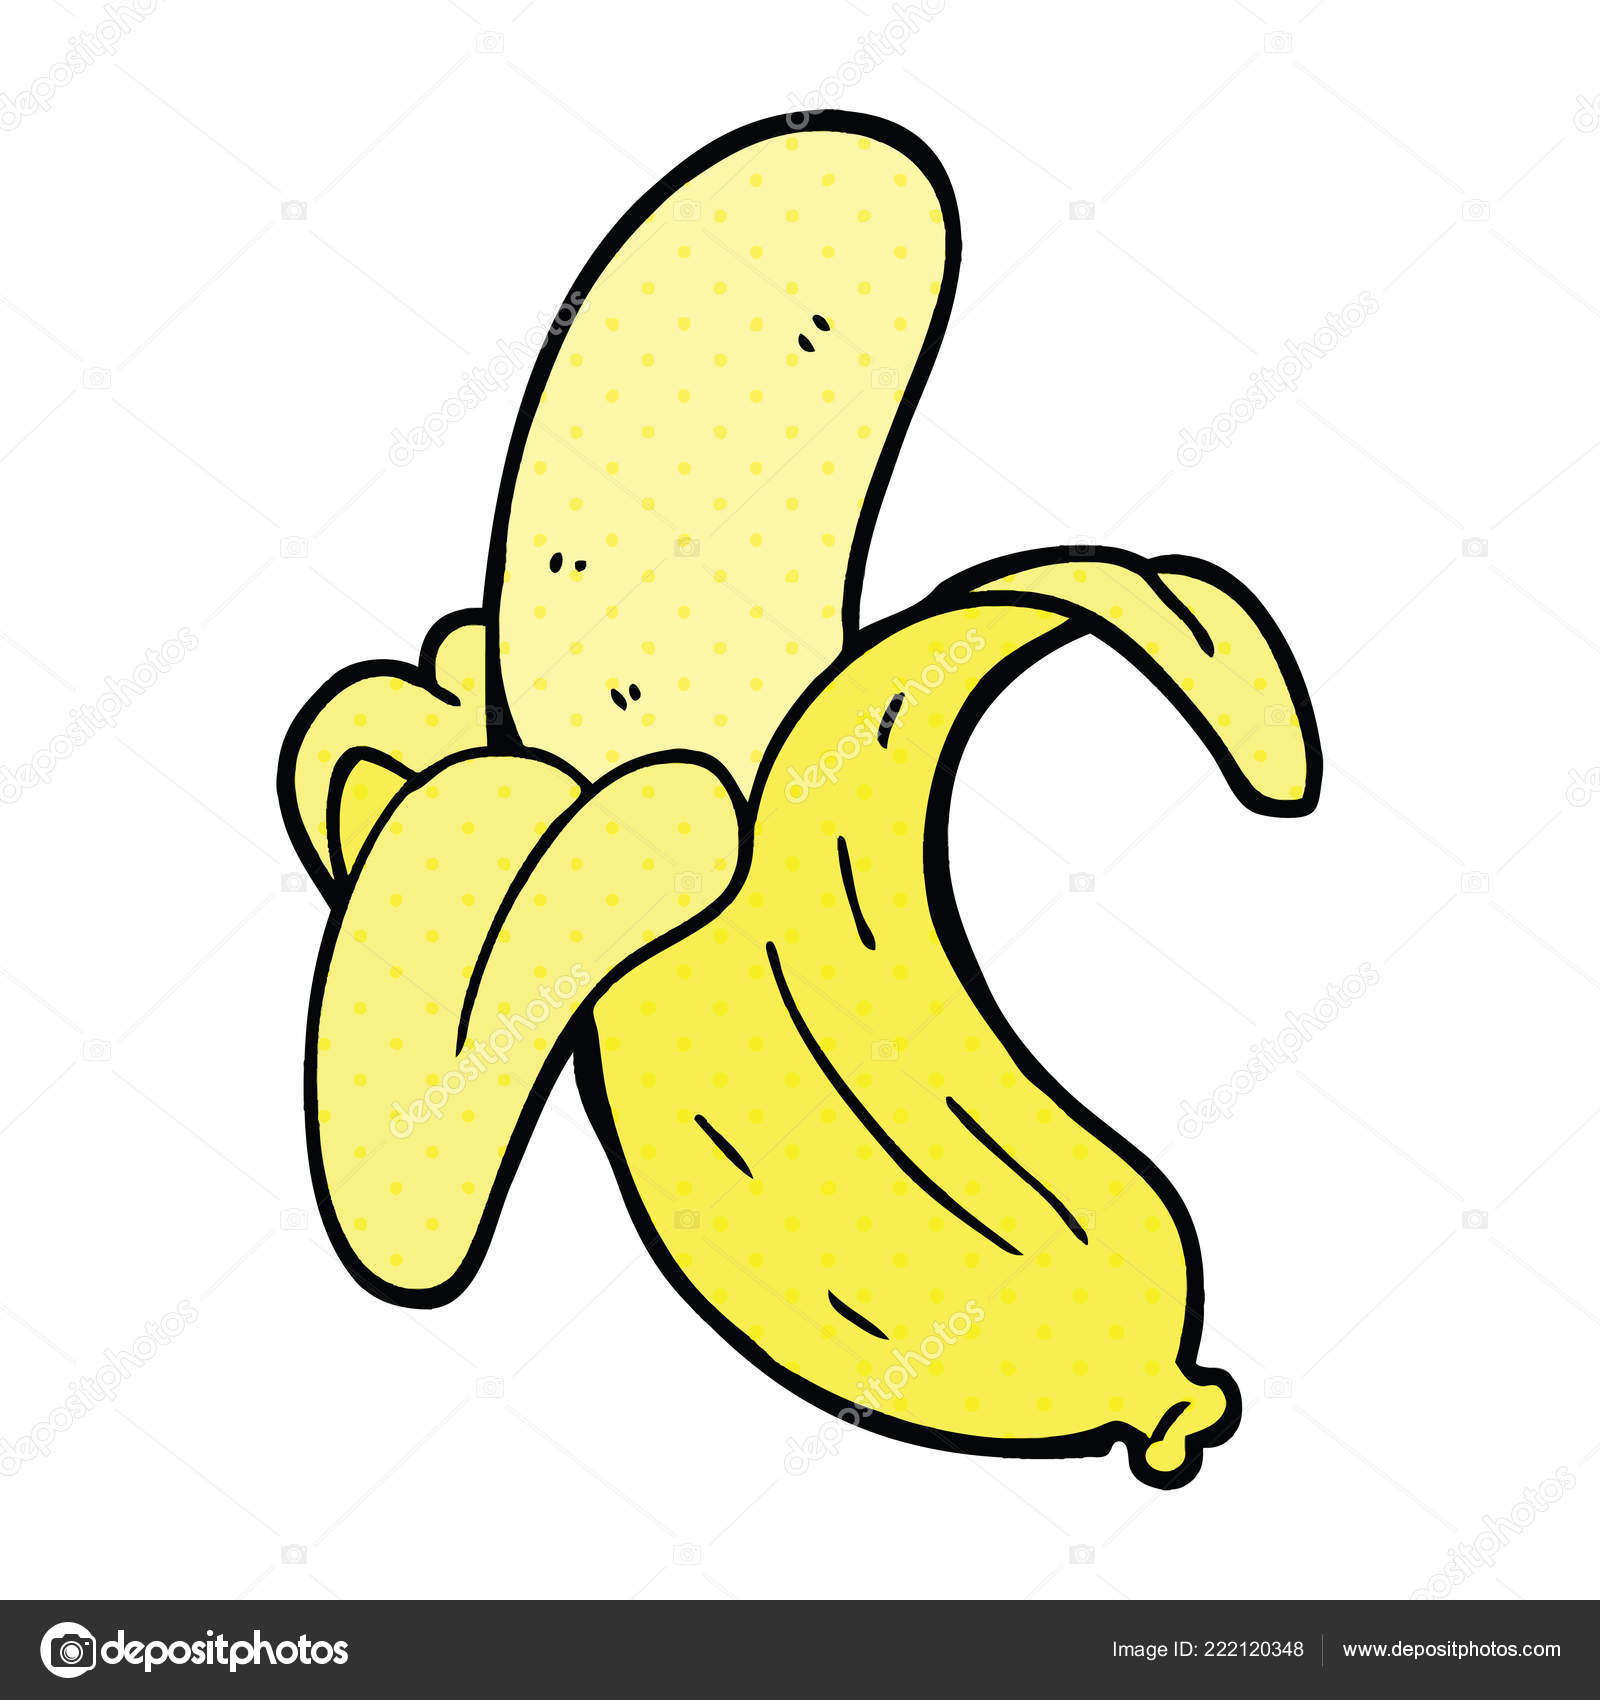 personagem de quadrinhos de banana banana desenho - Stockphoto #29018583